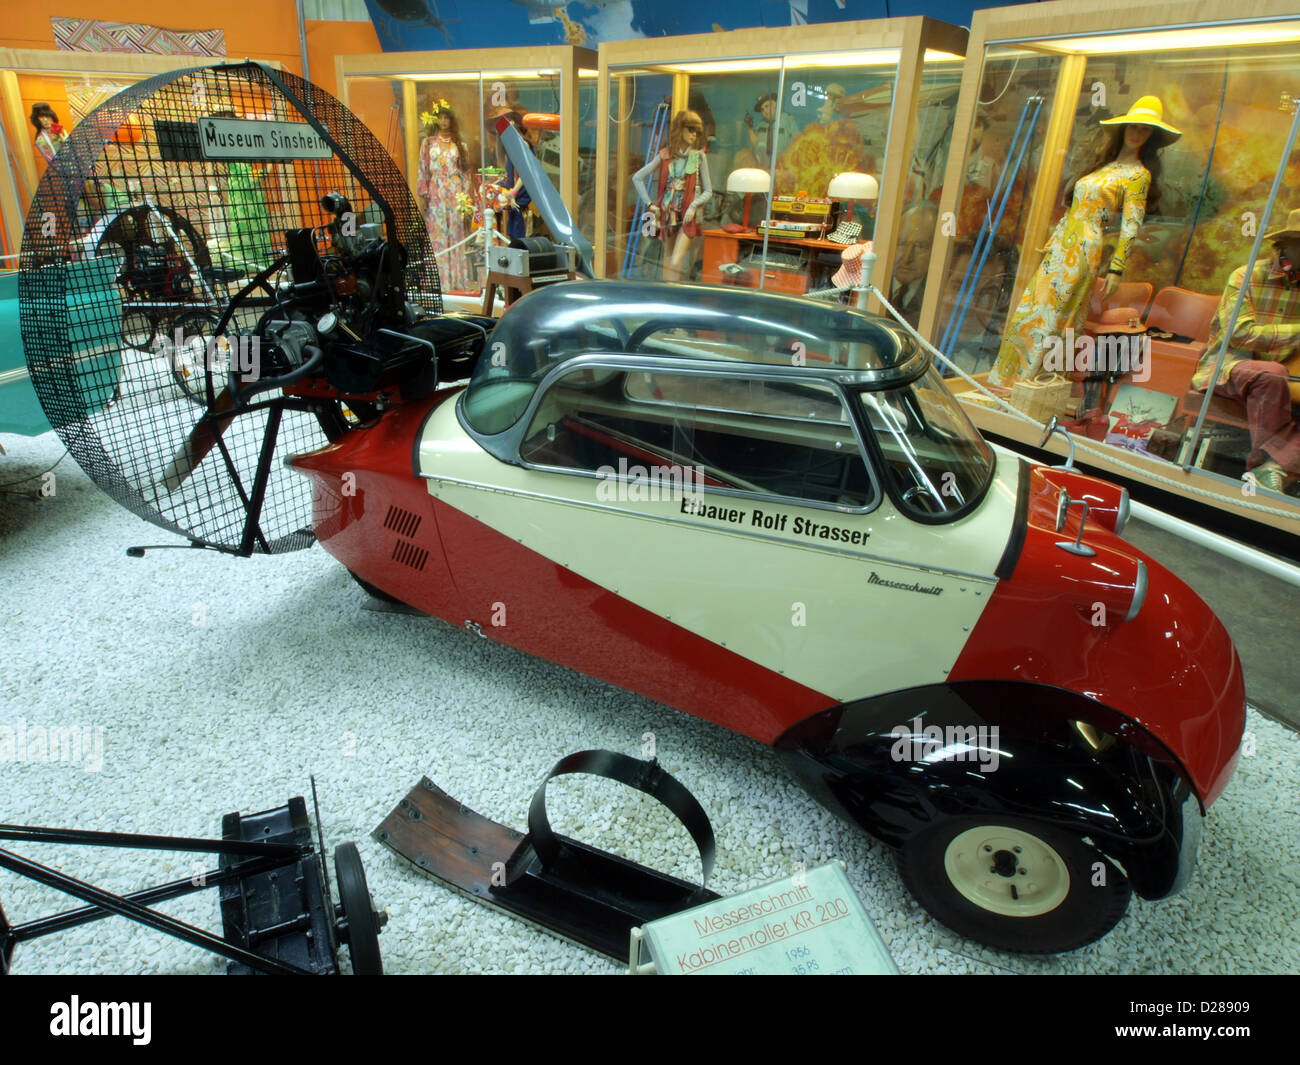 Auto & Technic museum Sinsheim.Messerschmitt Kabinenroller KR 200, Rolf Strasser Stock Photo